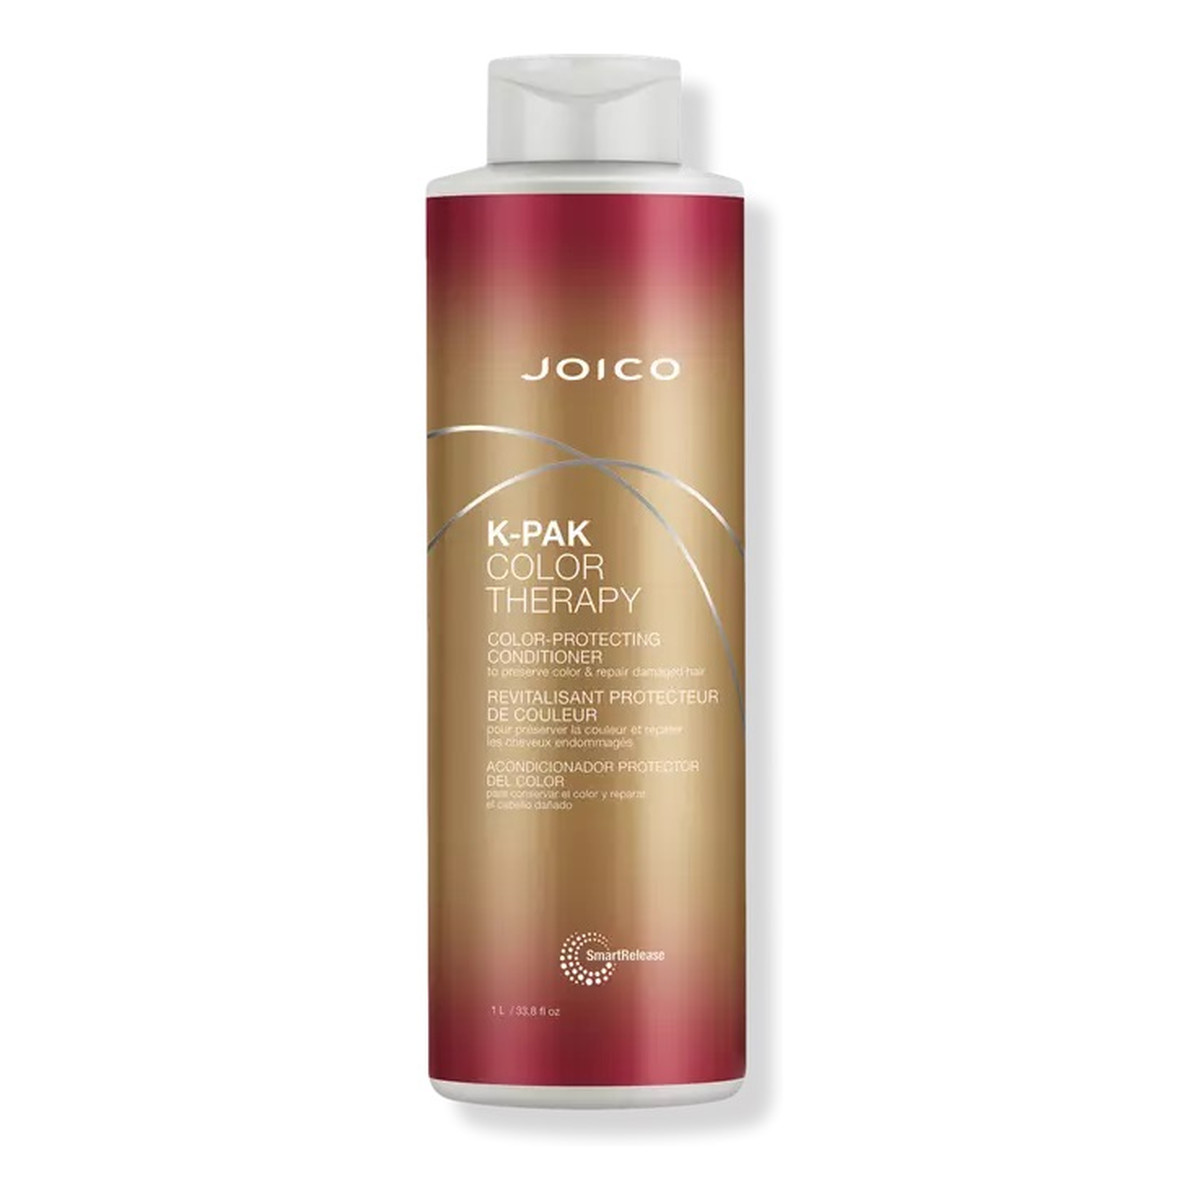 Joico K-pak color therapy conditioner odżywka chroniąca kolor włosów 1000ml